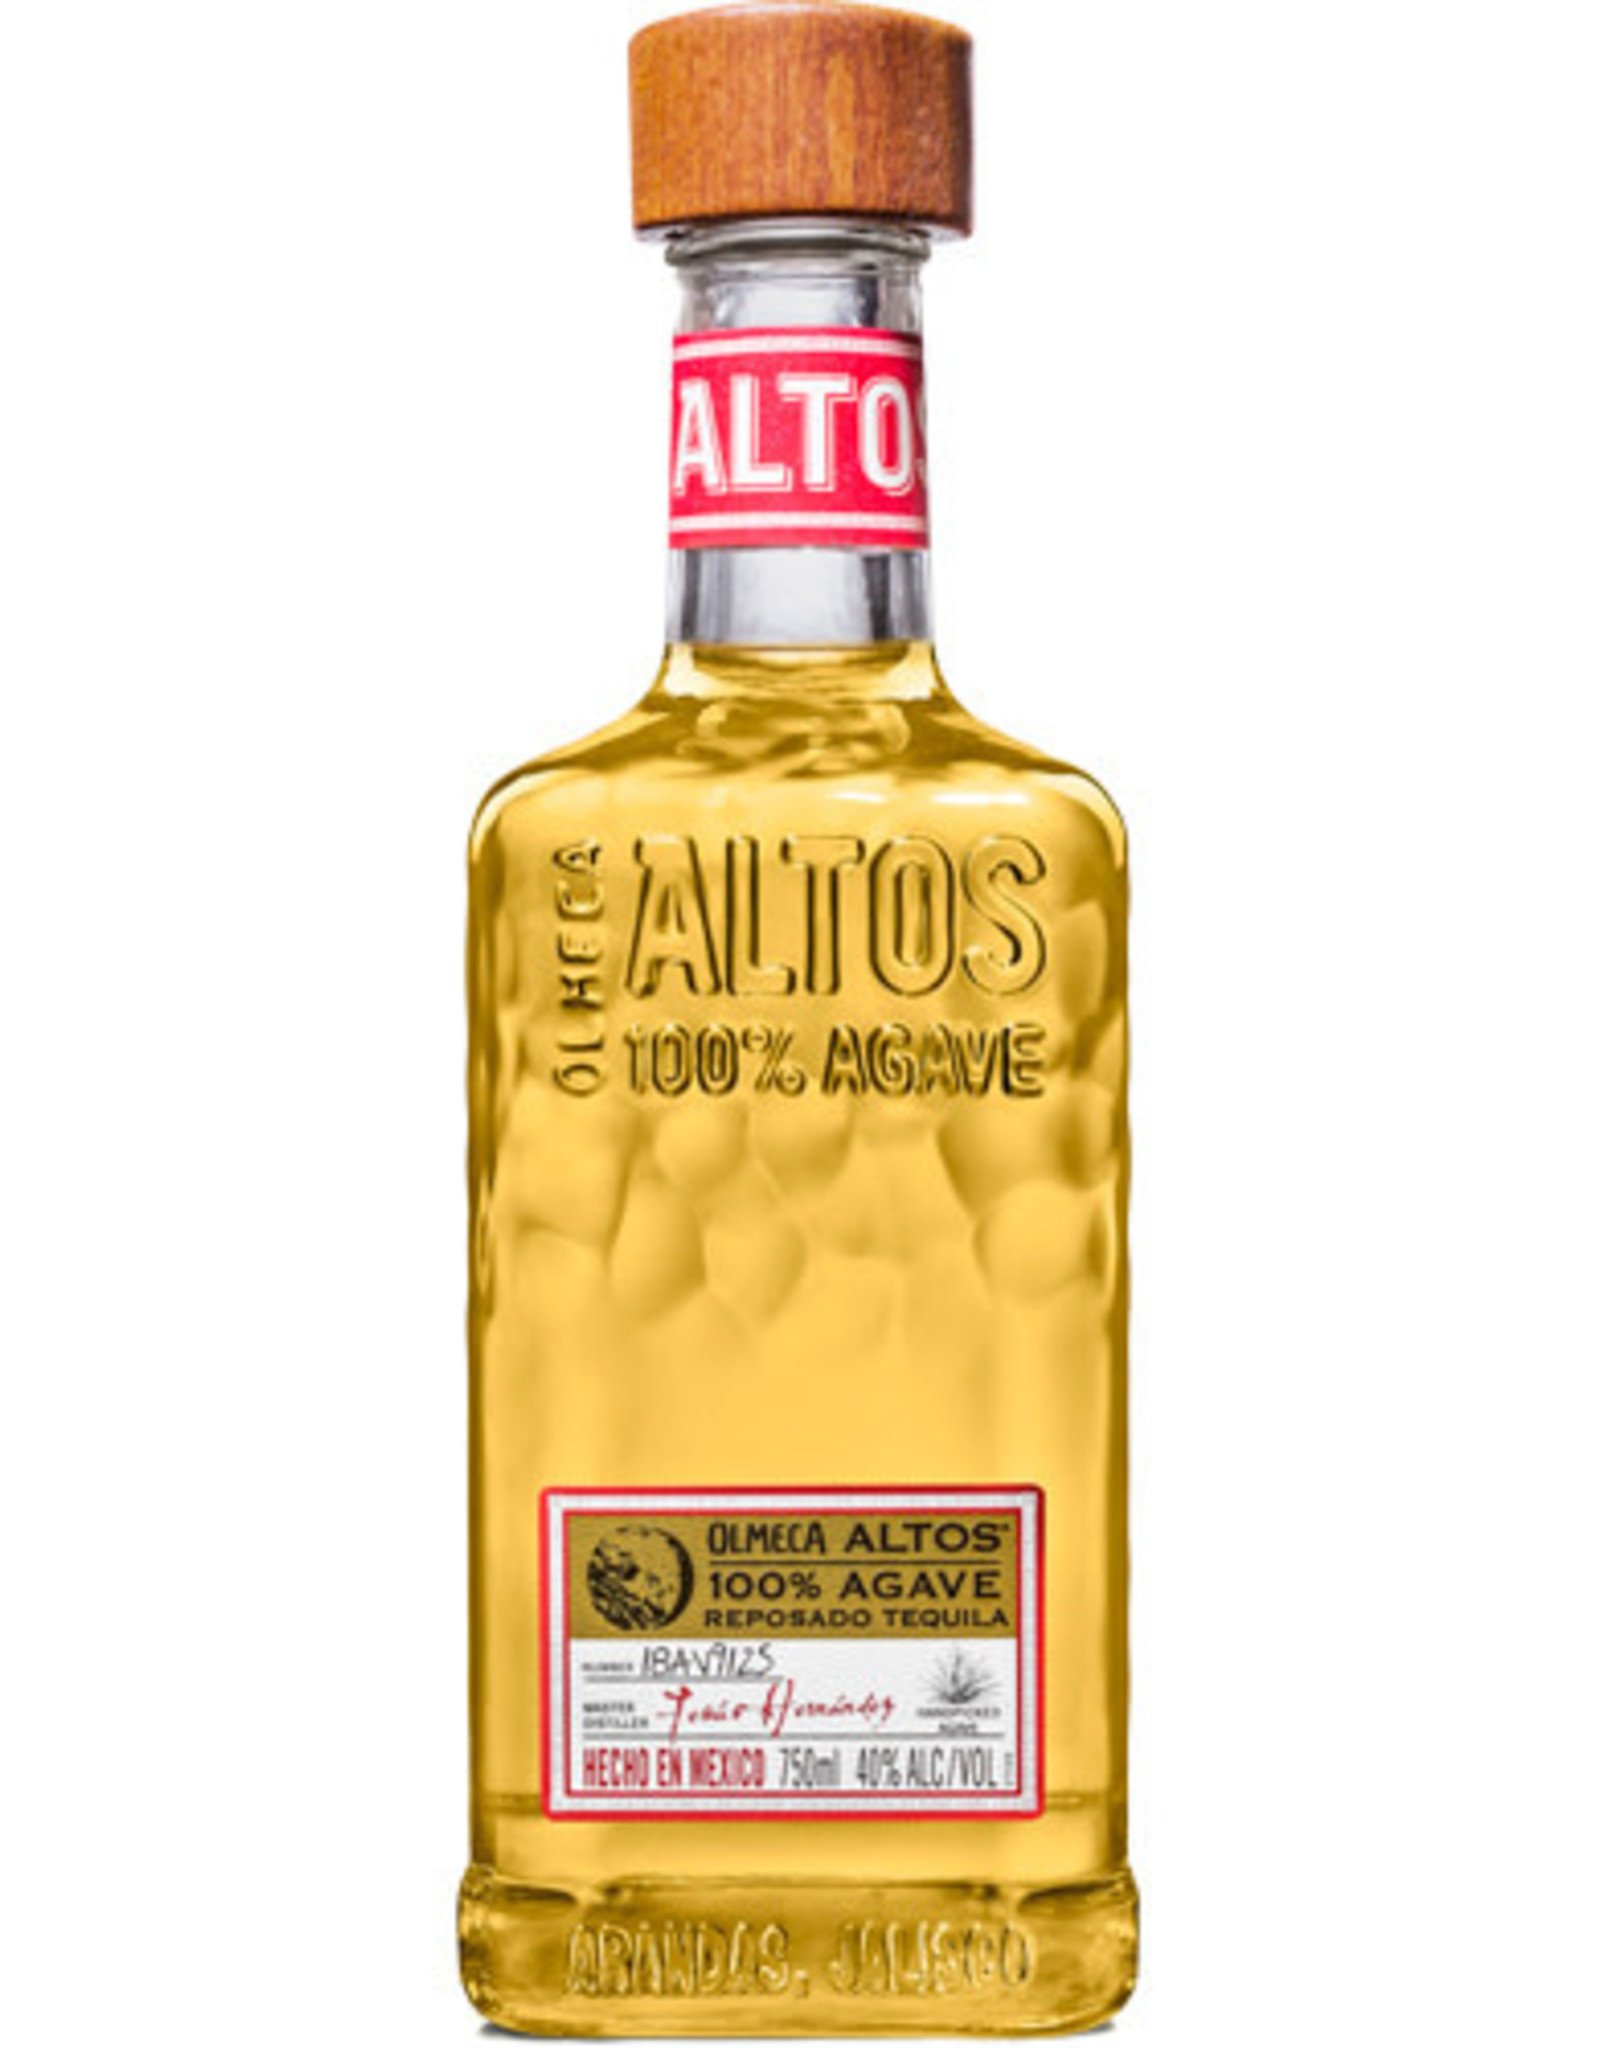 Altos Altos Reposado Tequila